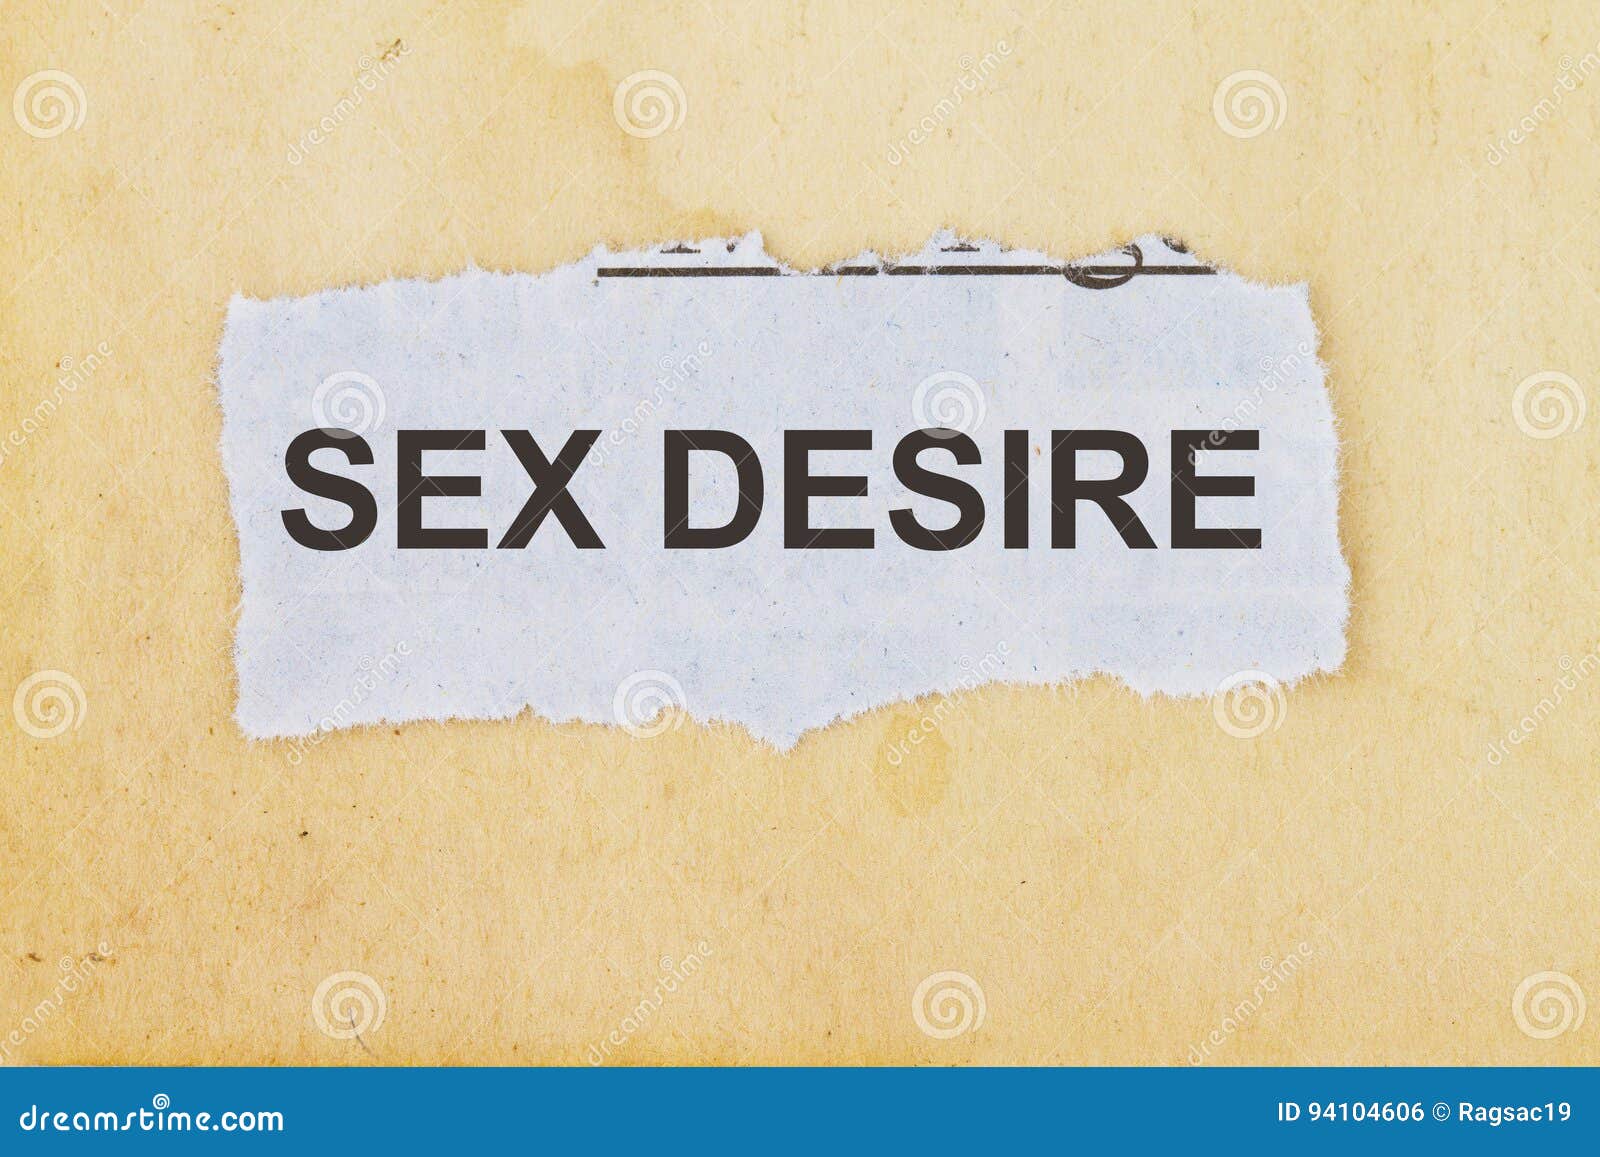 sex desire